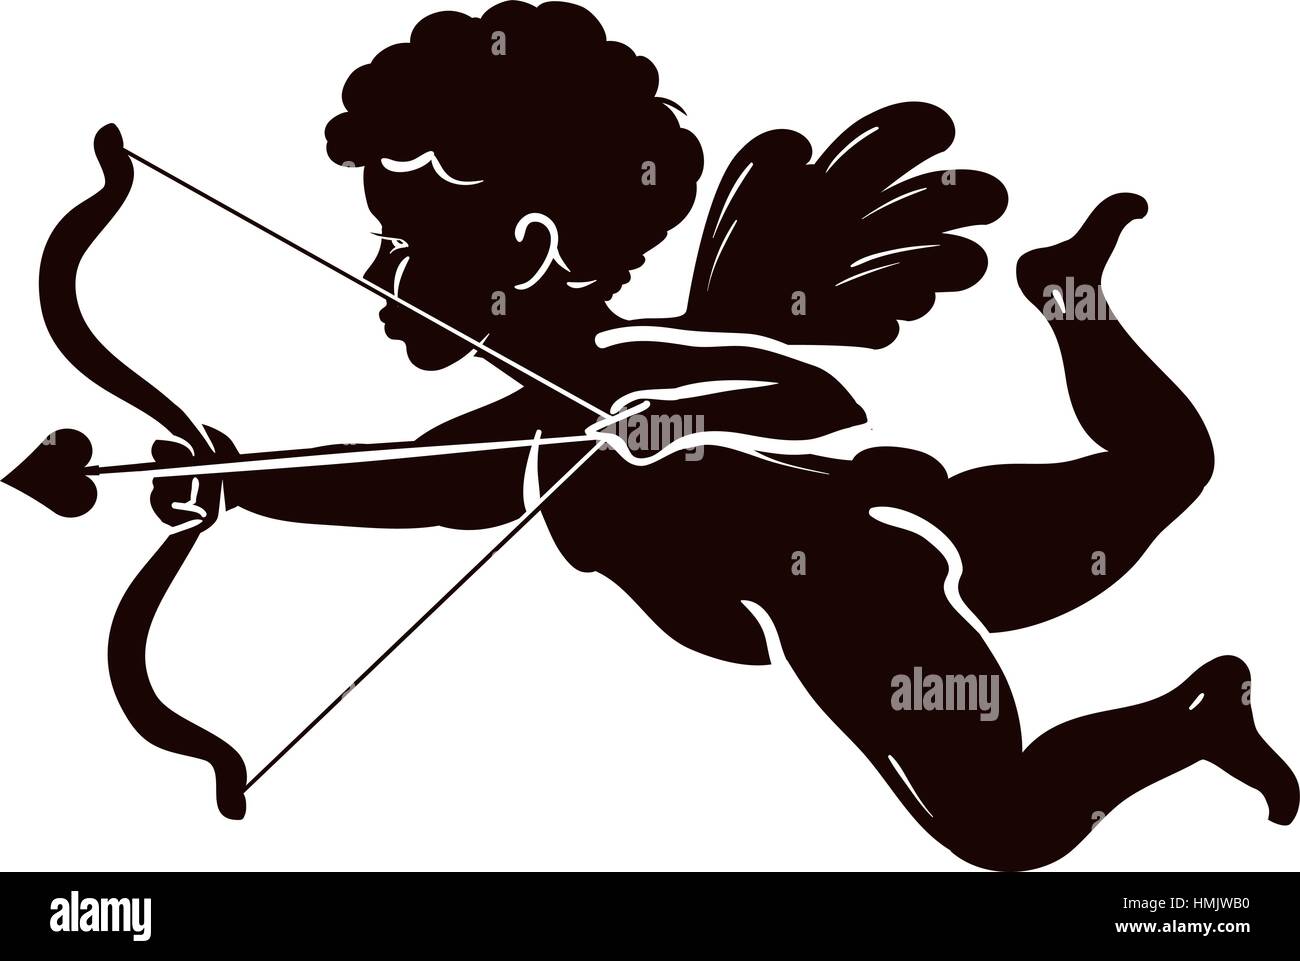 Silhouette Engel, Amor oder Cherub mit Pfeil und Bogen. Vektor-Illustration  isoliert auf weißem Hintergrund Stock-Vektorgrafik - Alamy